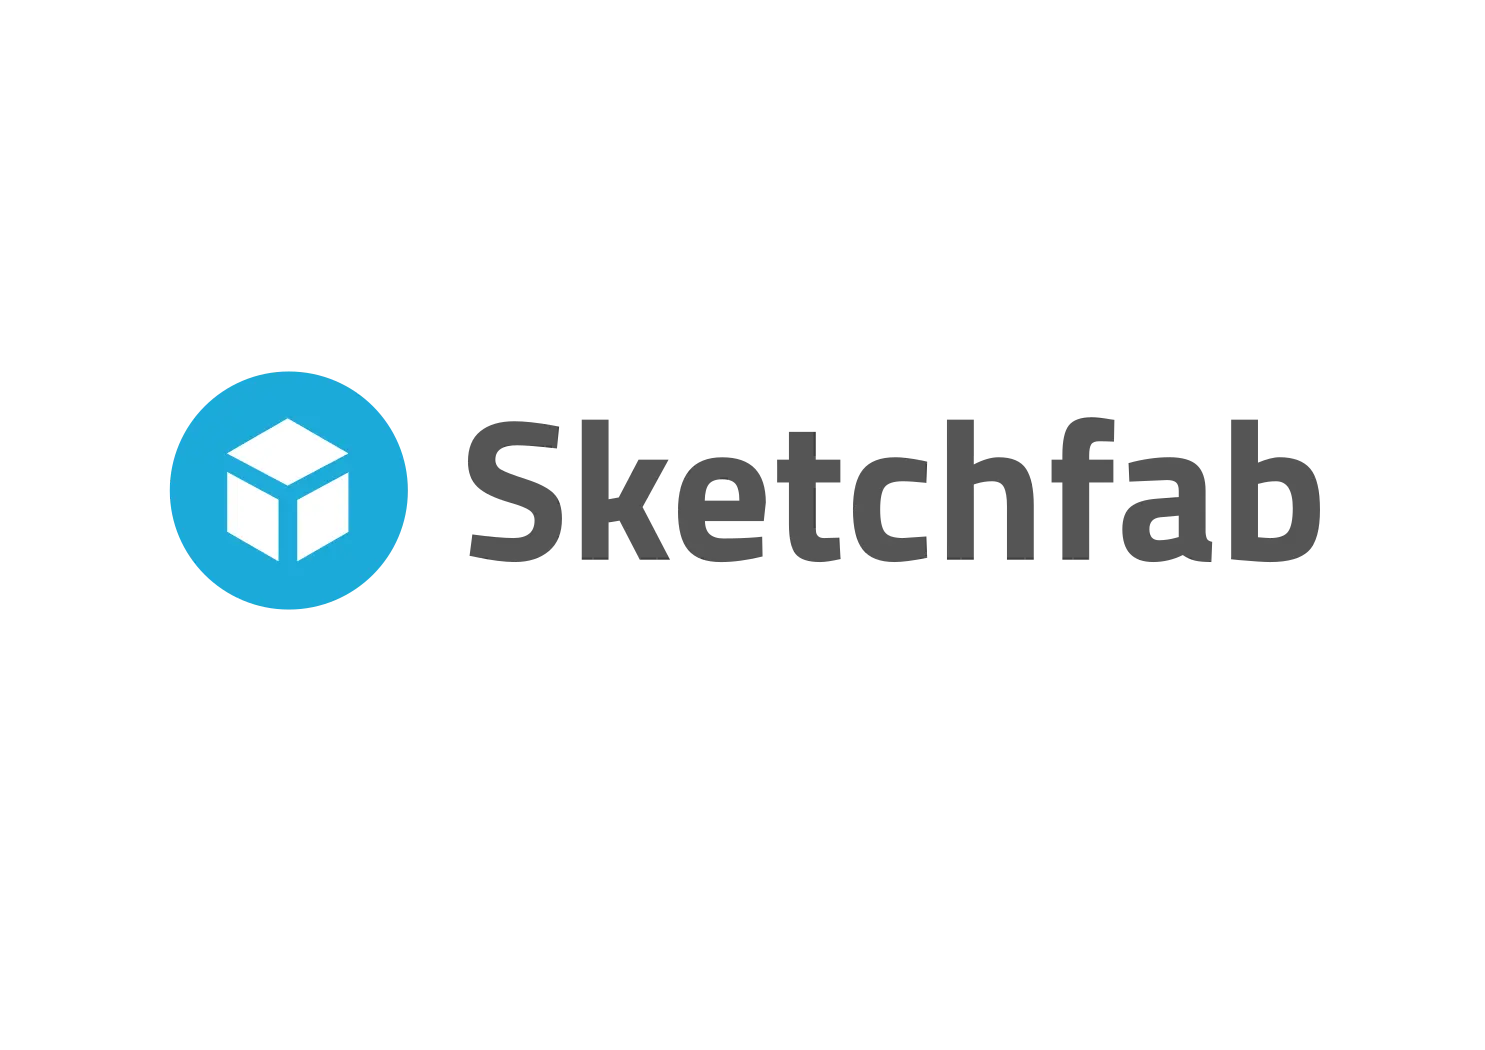 3D Printing Sites Sketchfab (stemfie.org)